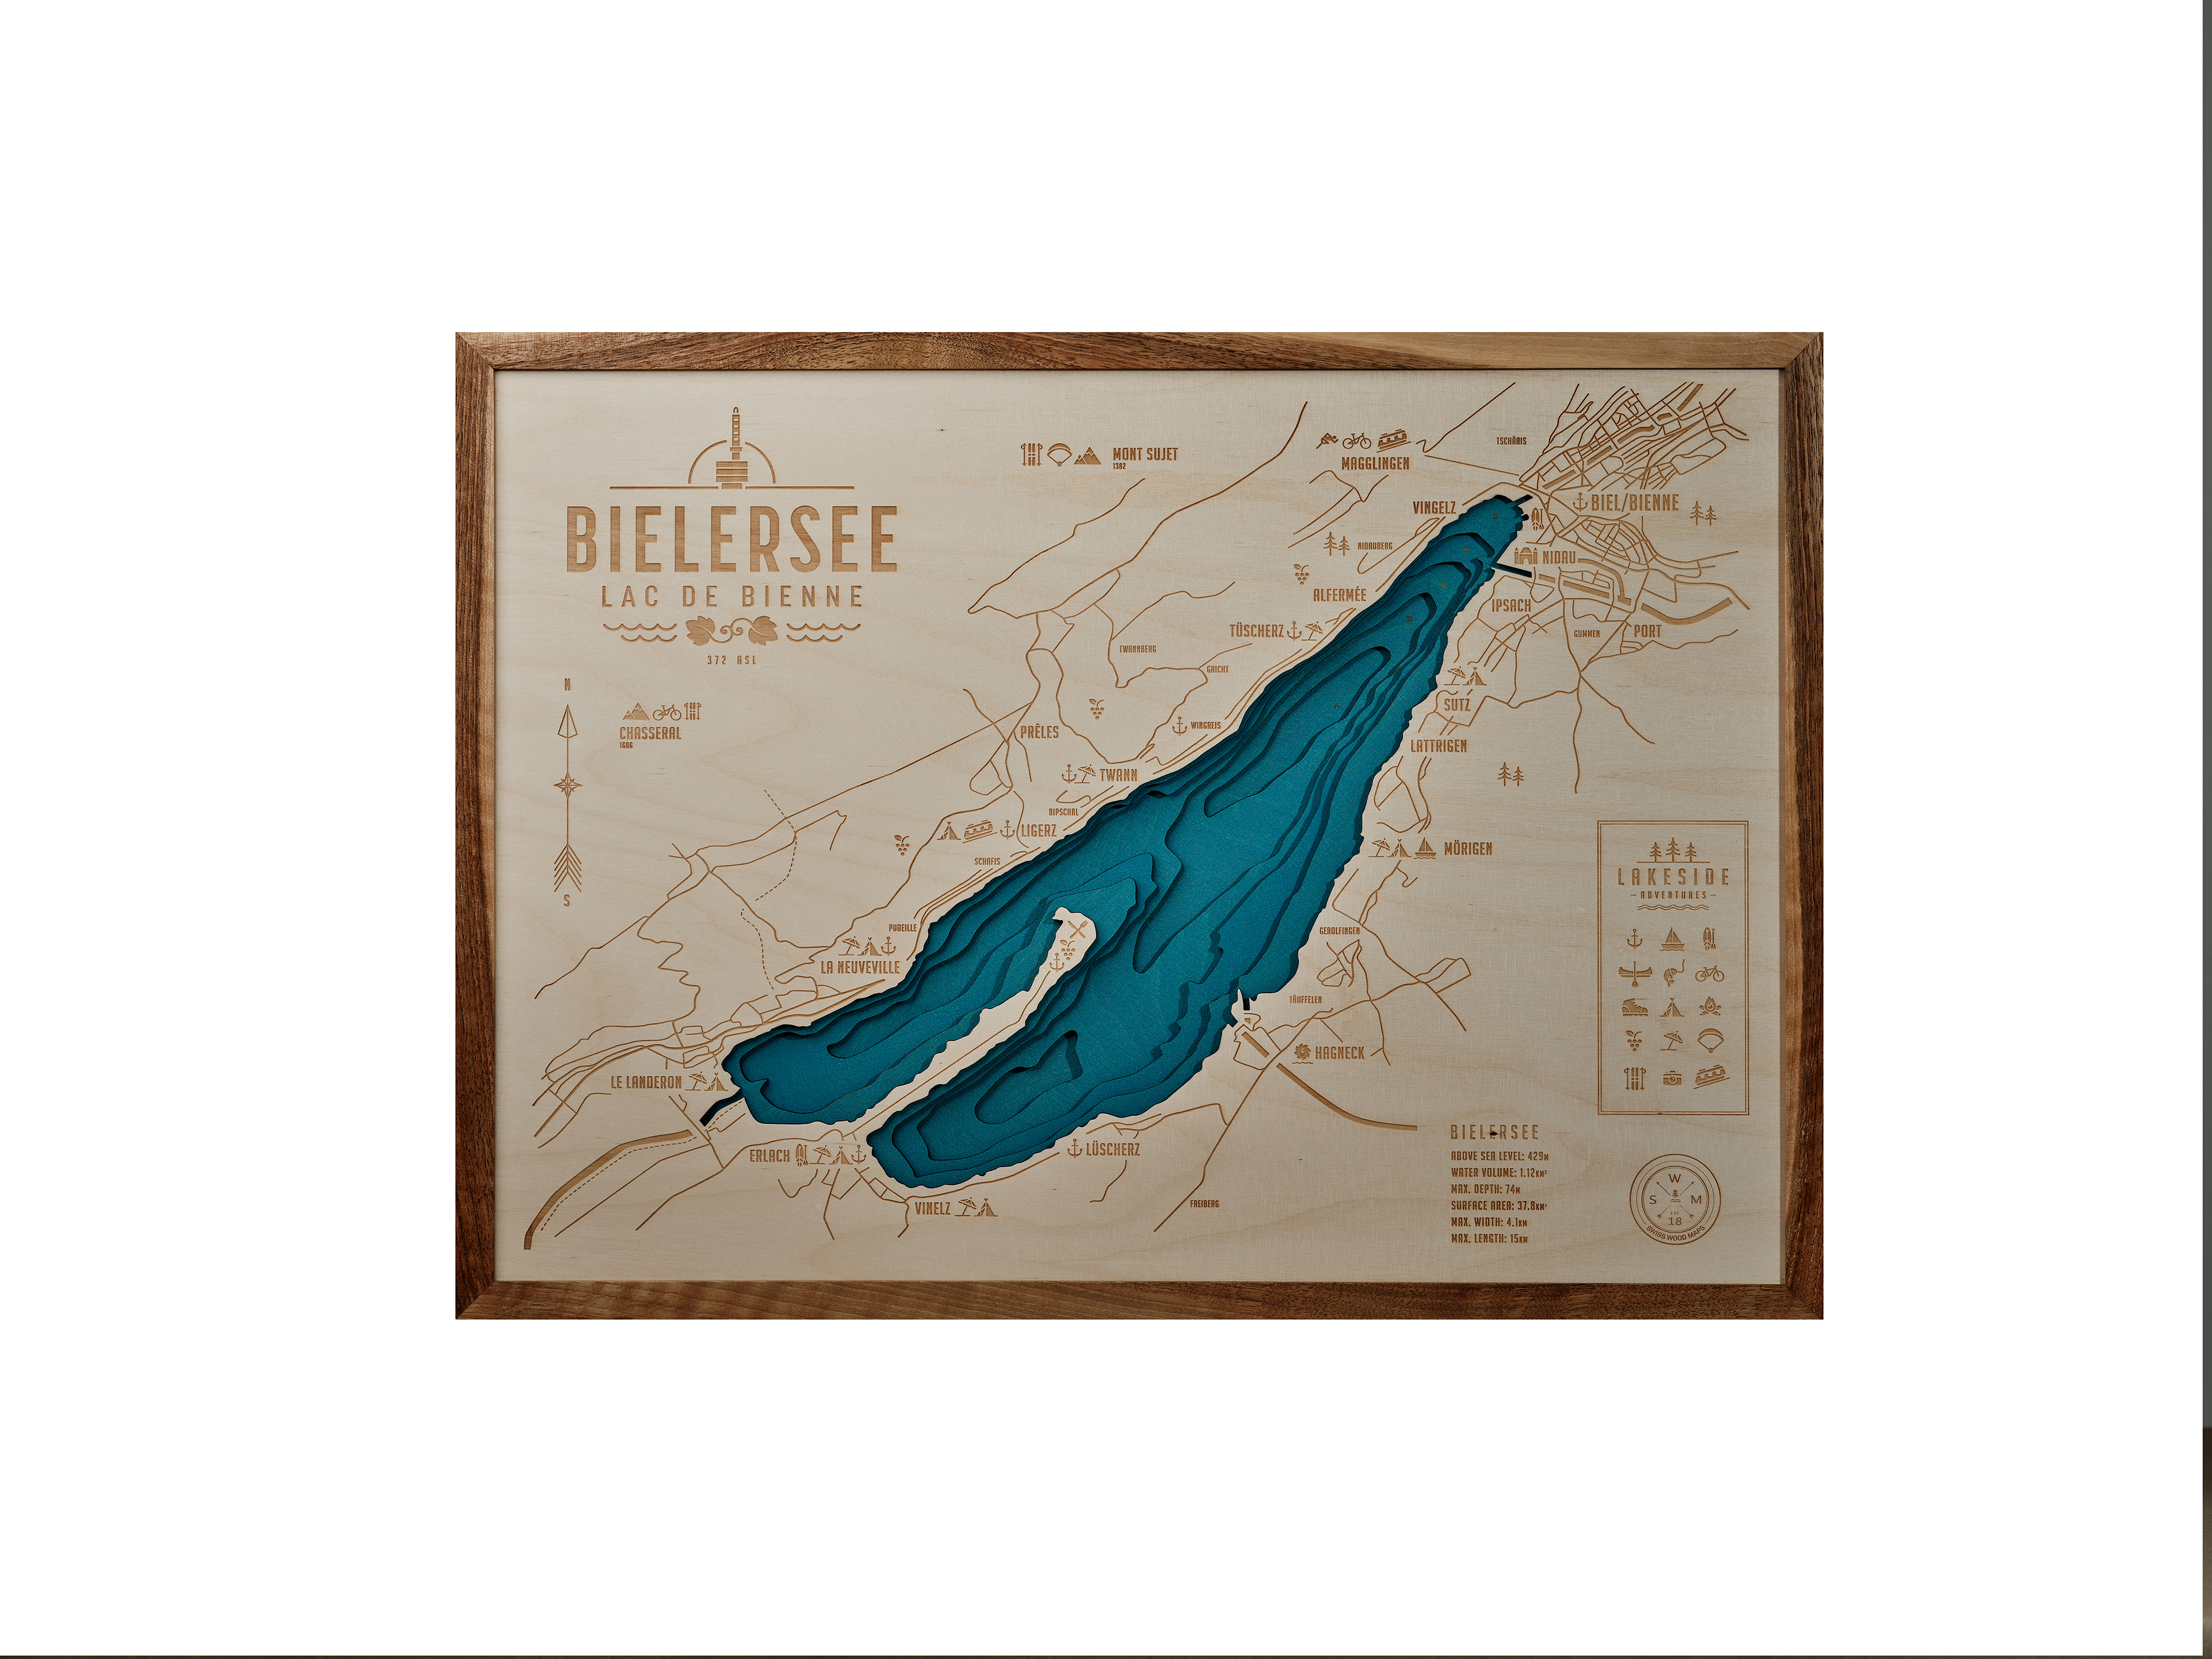 Bielersee / Lac de Bienne